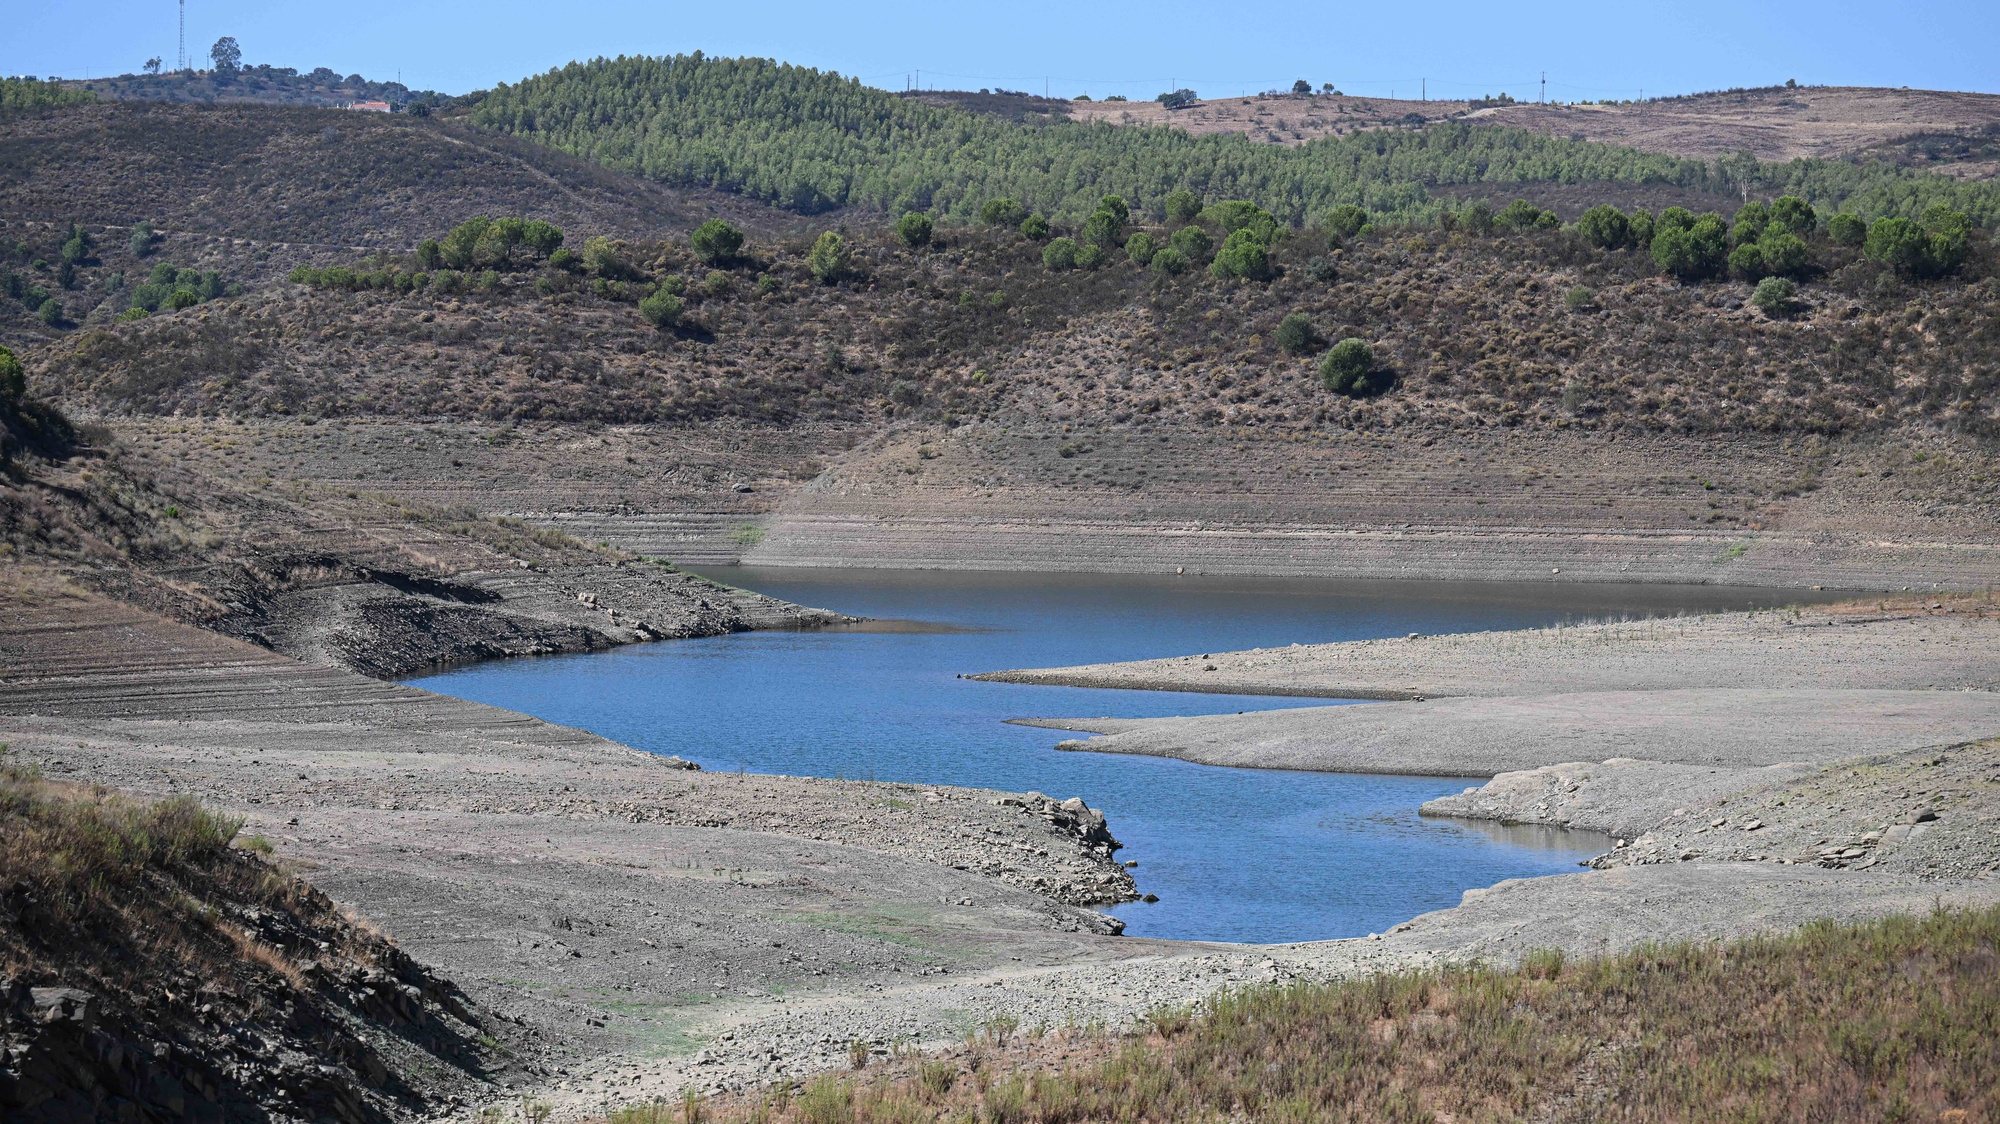 Barragem do Belhiche com pouca água devido às consequências da seca que afeta o baixo Guadiana, Castro Marim, 11 de agosto de 2022. (ACOMPANHA TEXTO DE 12-08-22) LUÍS FORRA/LUSA